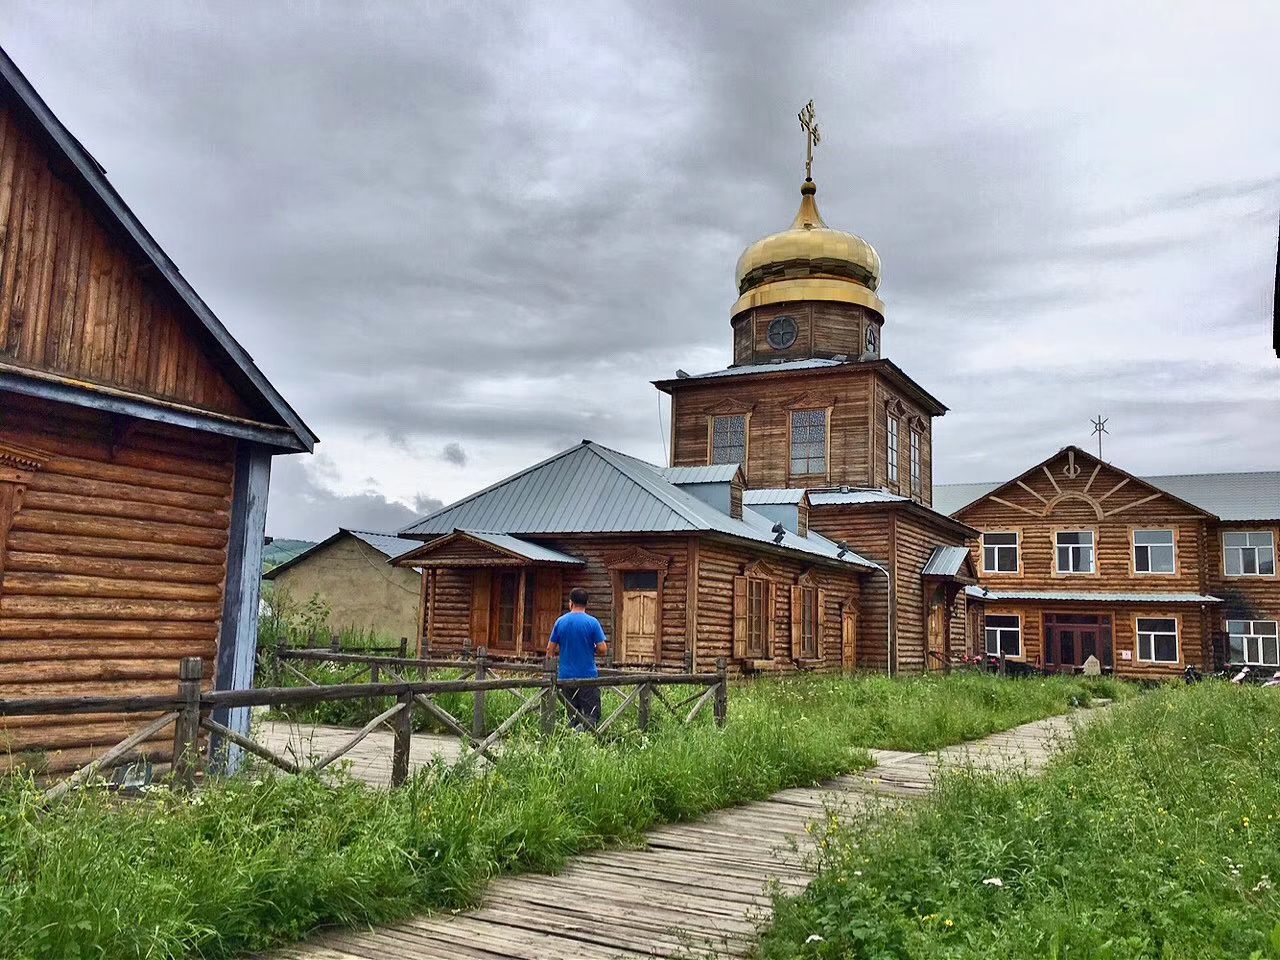 【携程攻略】额尔古纳俄罗斯族民俗馆景点,就在俄罗斯民族乡里面，比较小的一个建筑。相对其他民居来说，大一点…